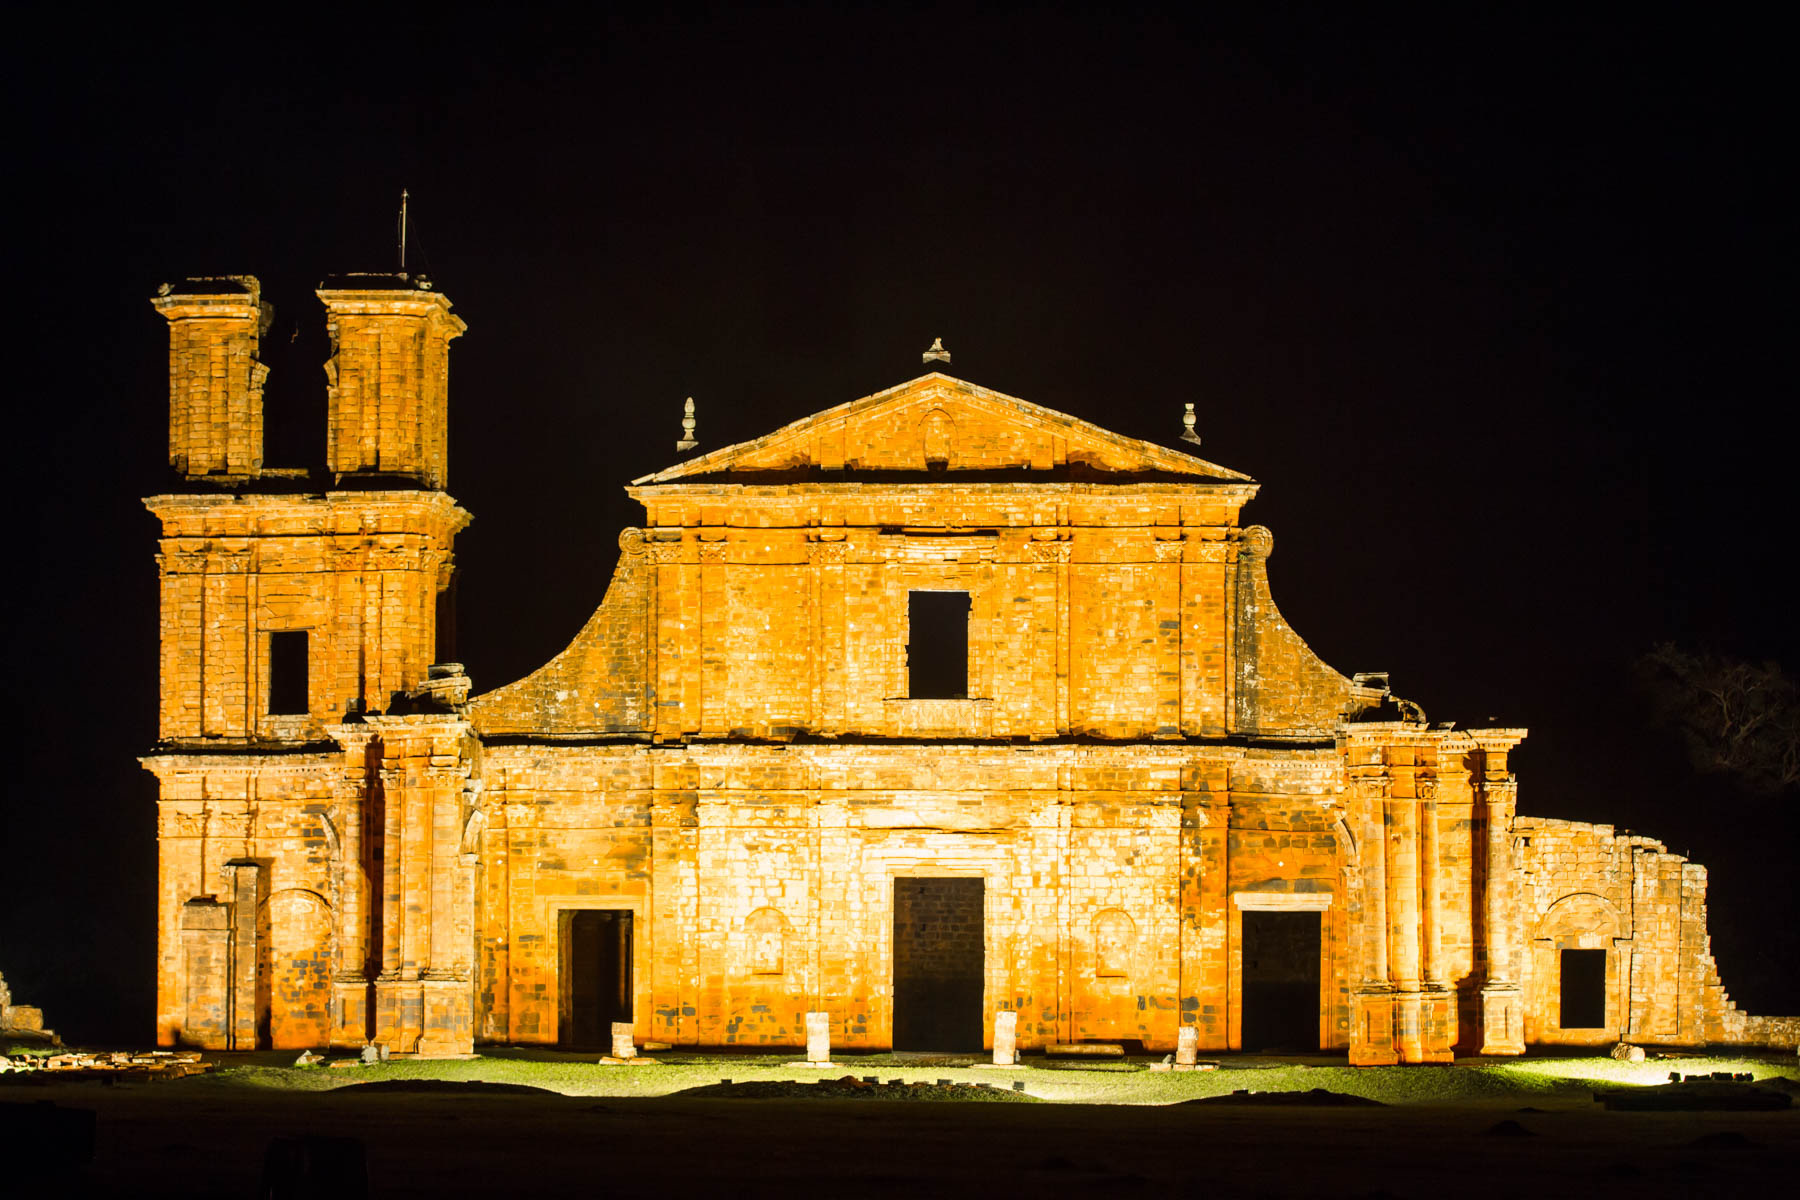 Ensemble architectural très complet des ruines d’une église d’inspiration baroque éclairée dans la noirceur.